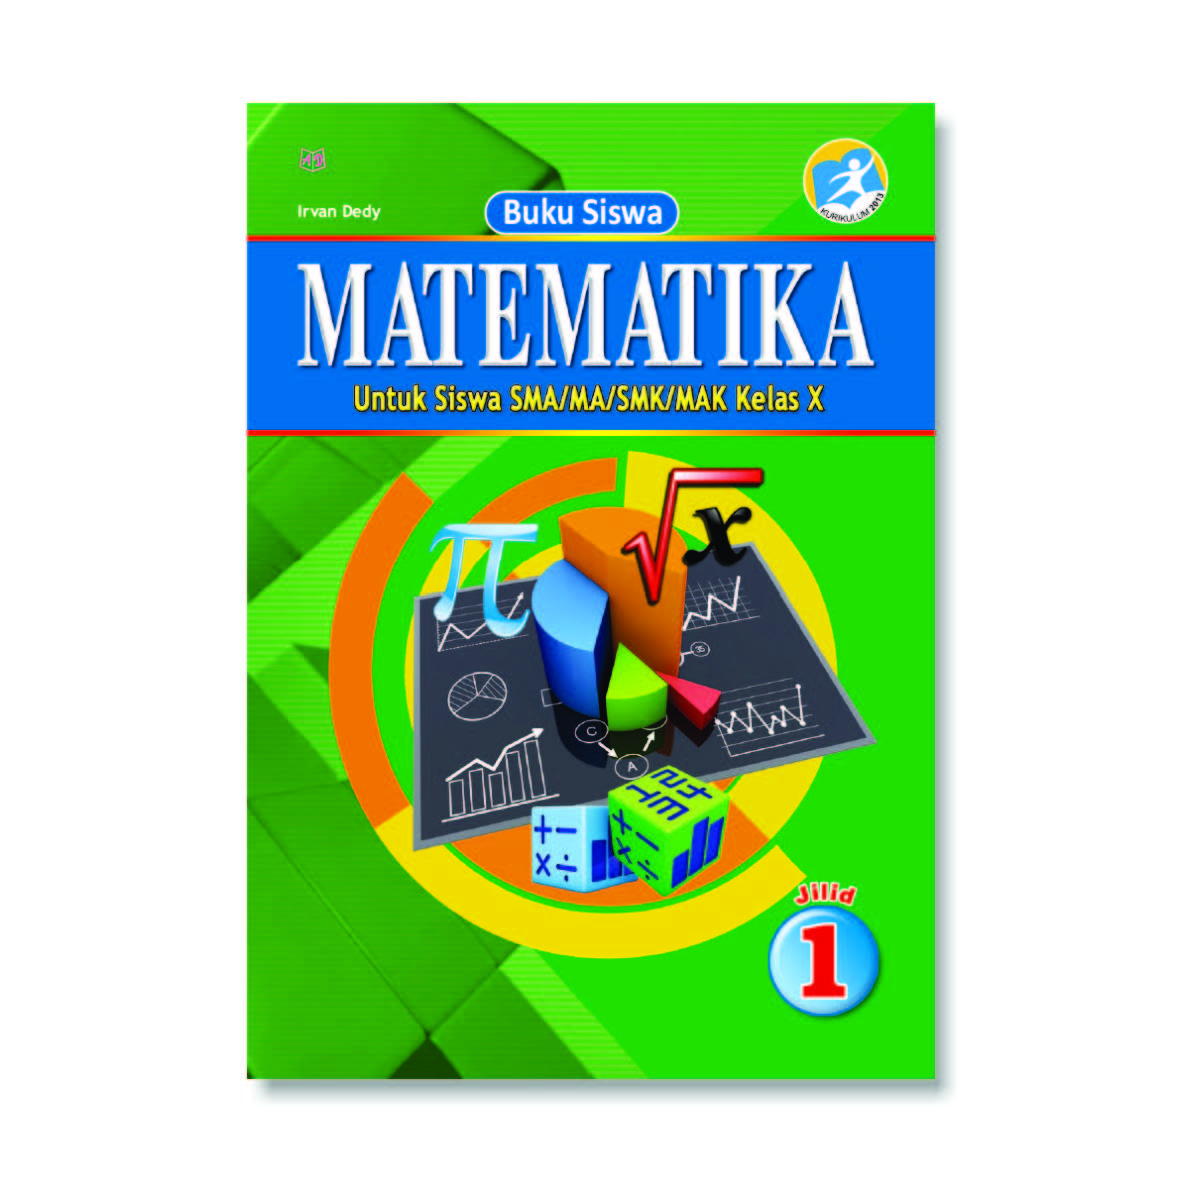 Jual Buku Siswa Matematika Jilid 1 Untuk Siswa Sma Ma Smk Mak Kelas X Kurikulum 2013 Di Toko Cv Smart Jaya Abadi Siplah